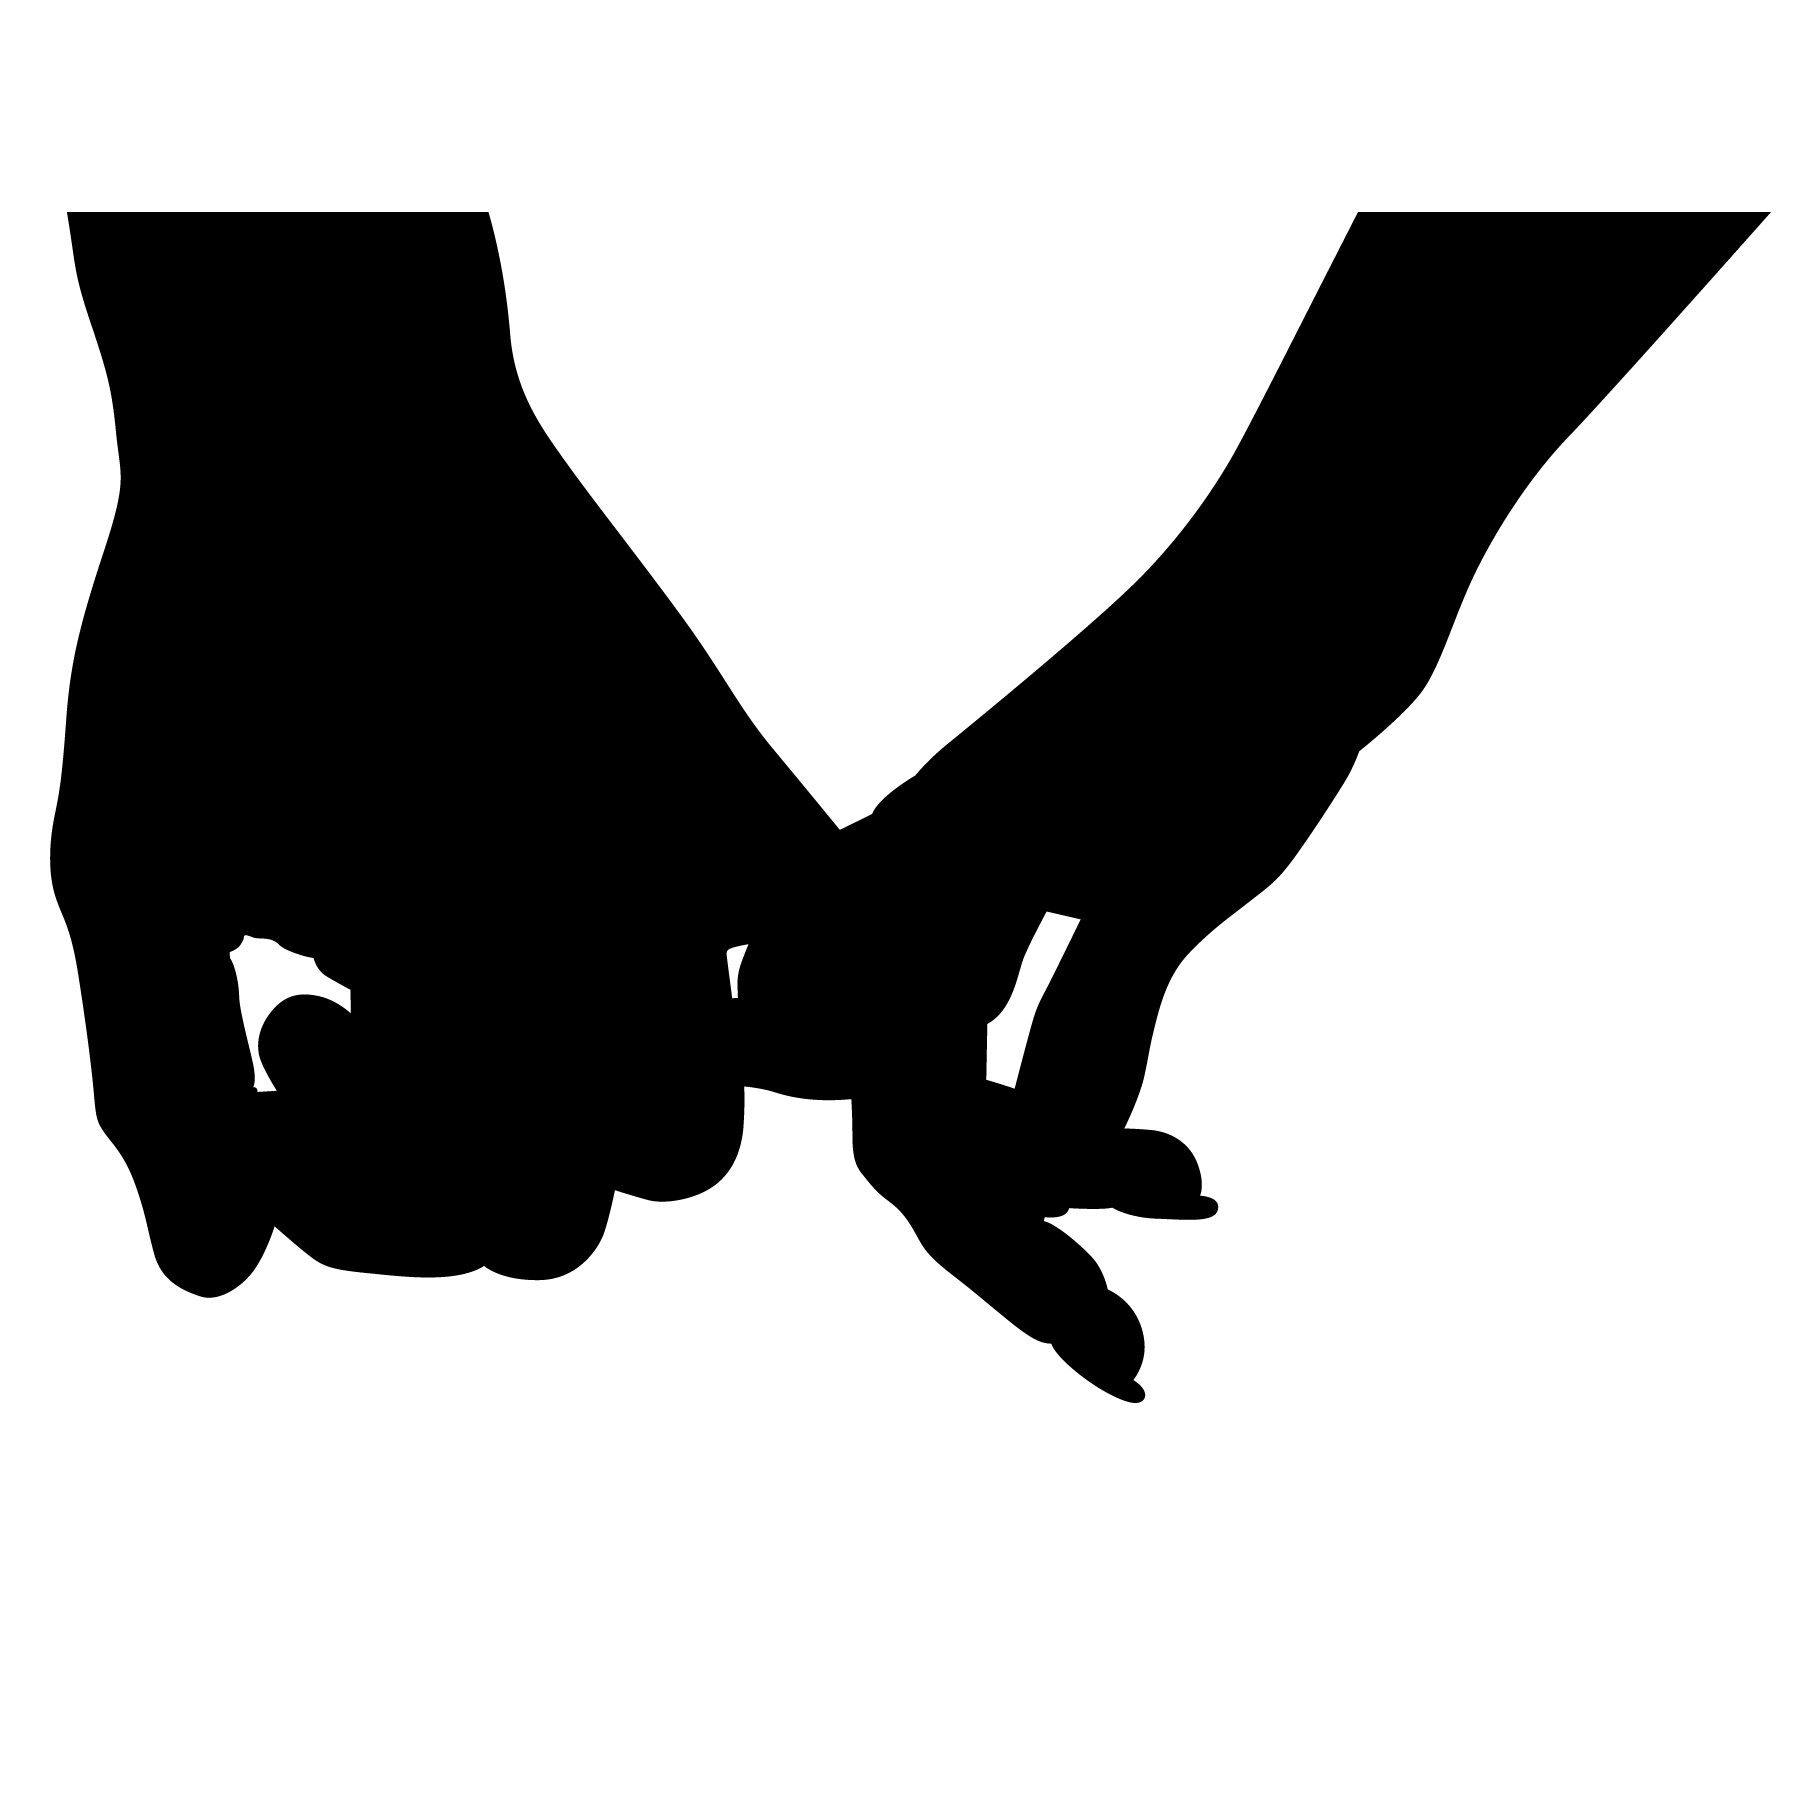 Holding Hands SVG